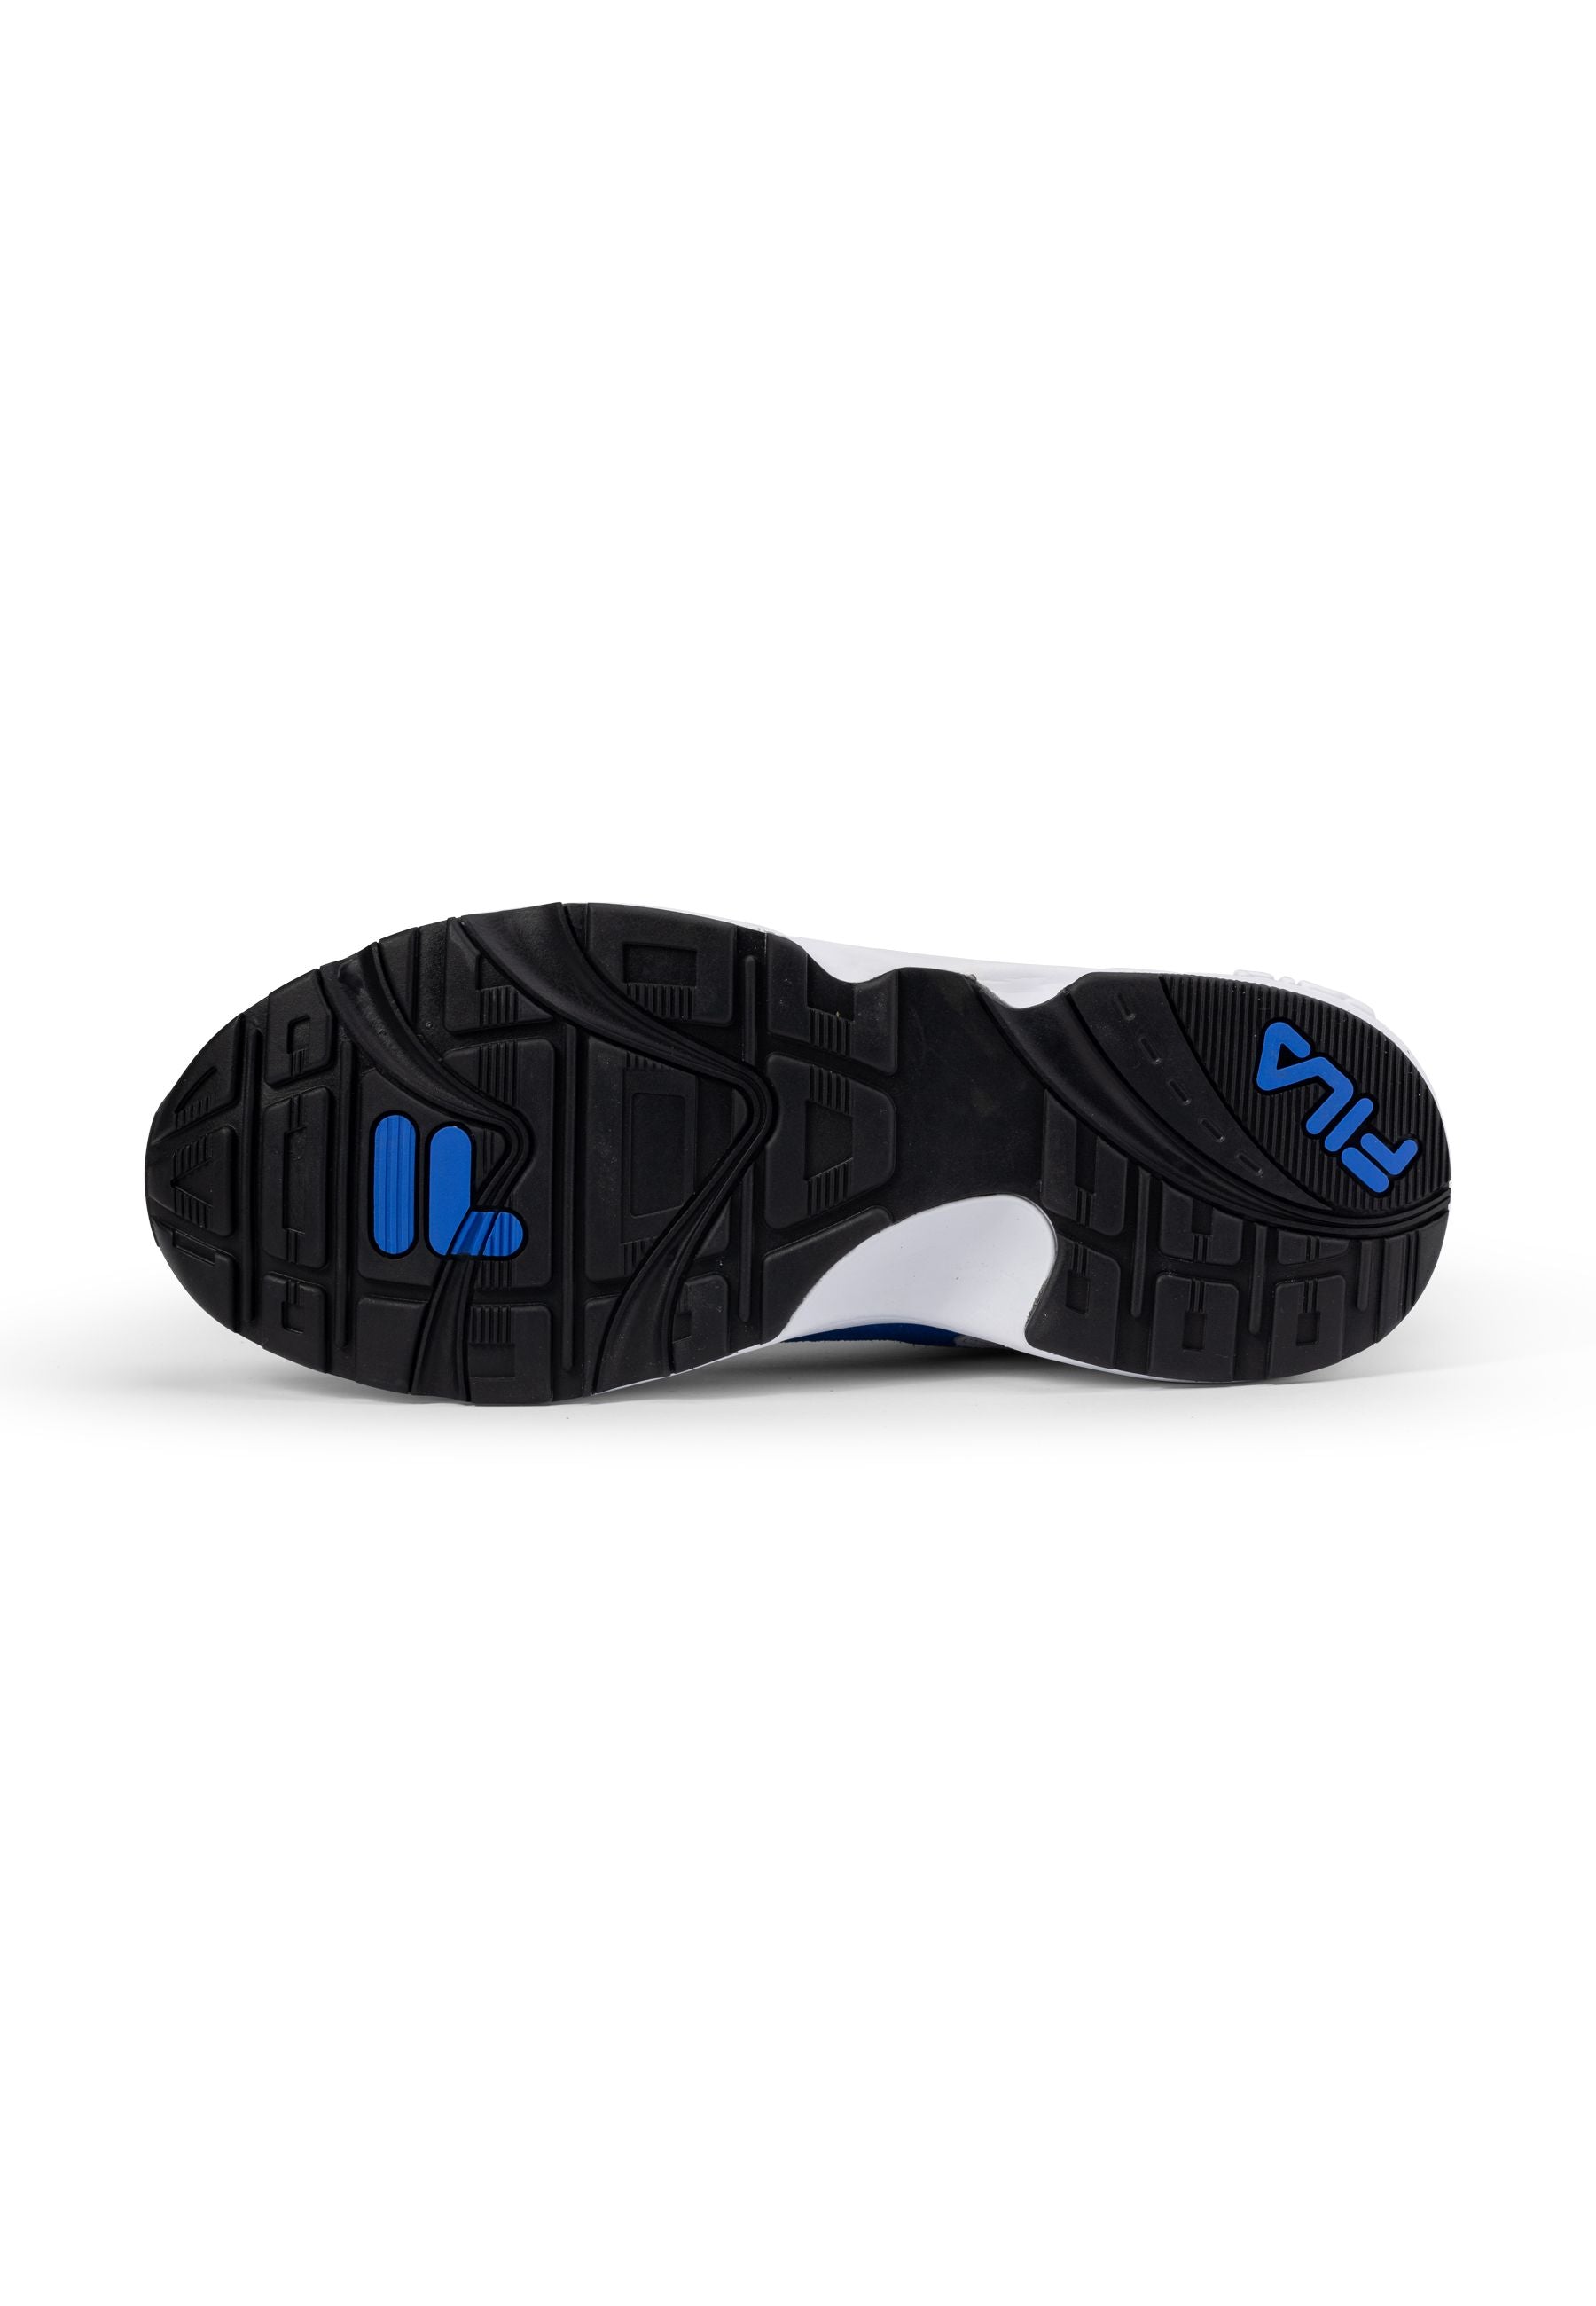 V94M in White-Prime Blue Sneakers Fila   